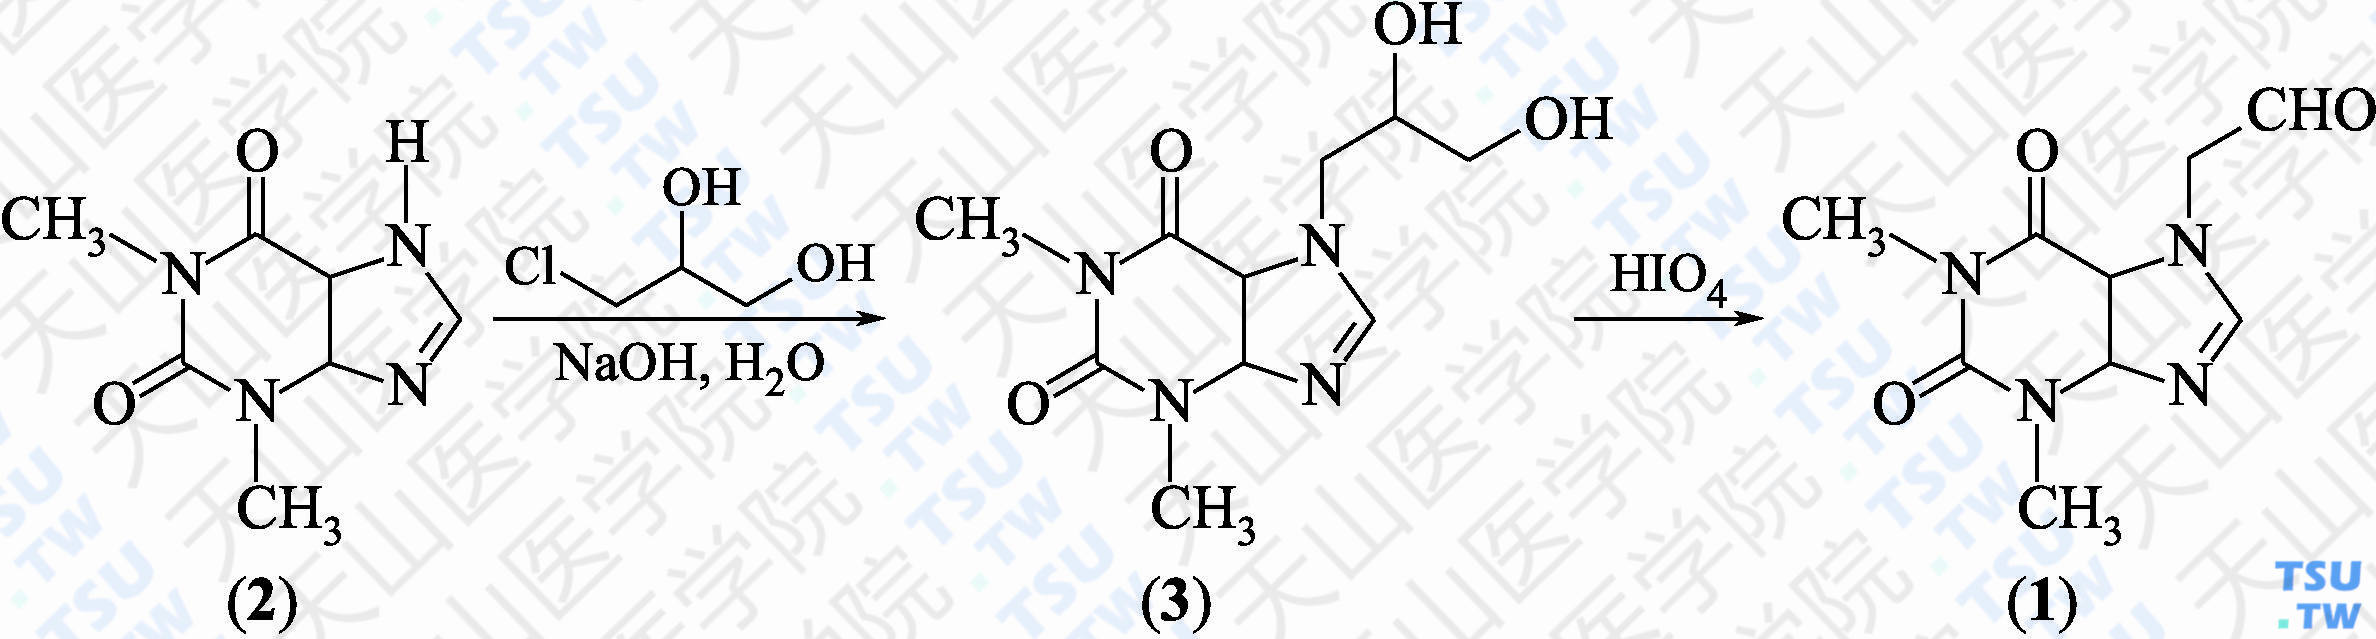 2-（1，3-二甲基-2，6-二氧代-1，2，3，4，5，6-六氢嘌呤-7-基）乙醛（分子式：C<sub>9</sub>H<sub>12</sub>N<sub>4</sub>O<sub>3</sub>）的合成方法路线及其结构式